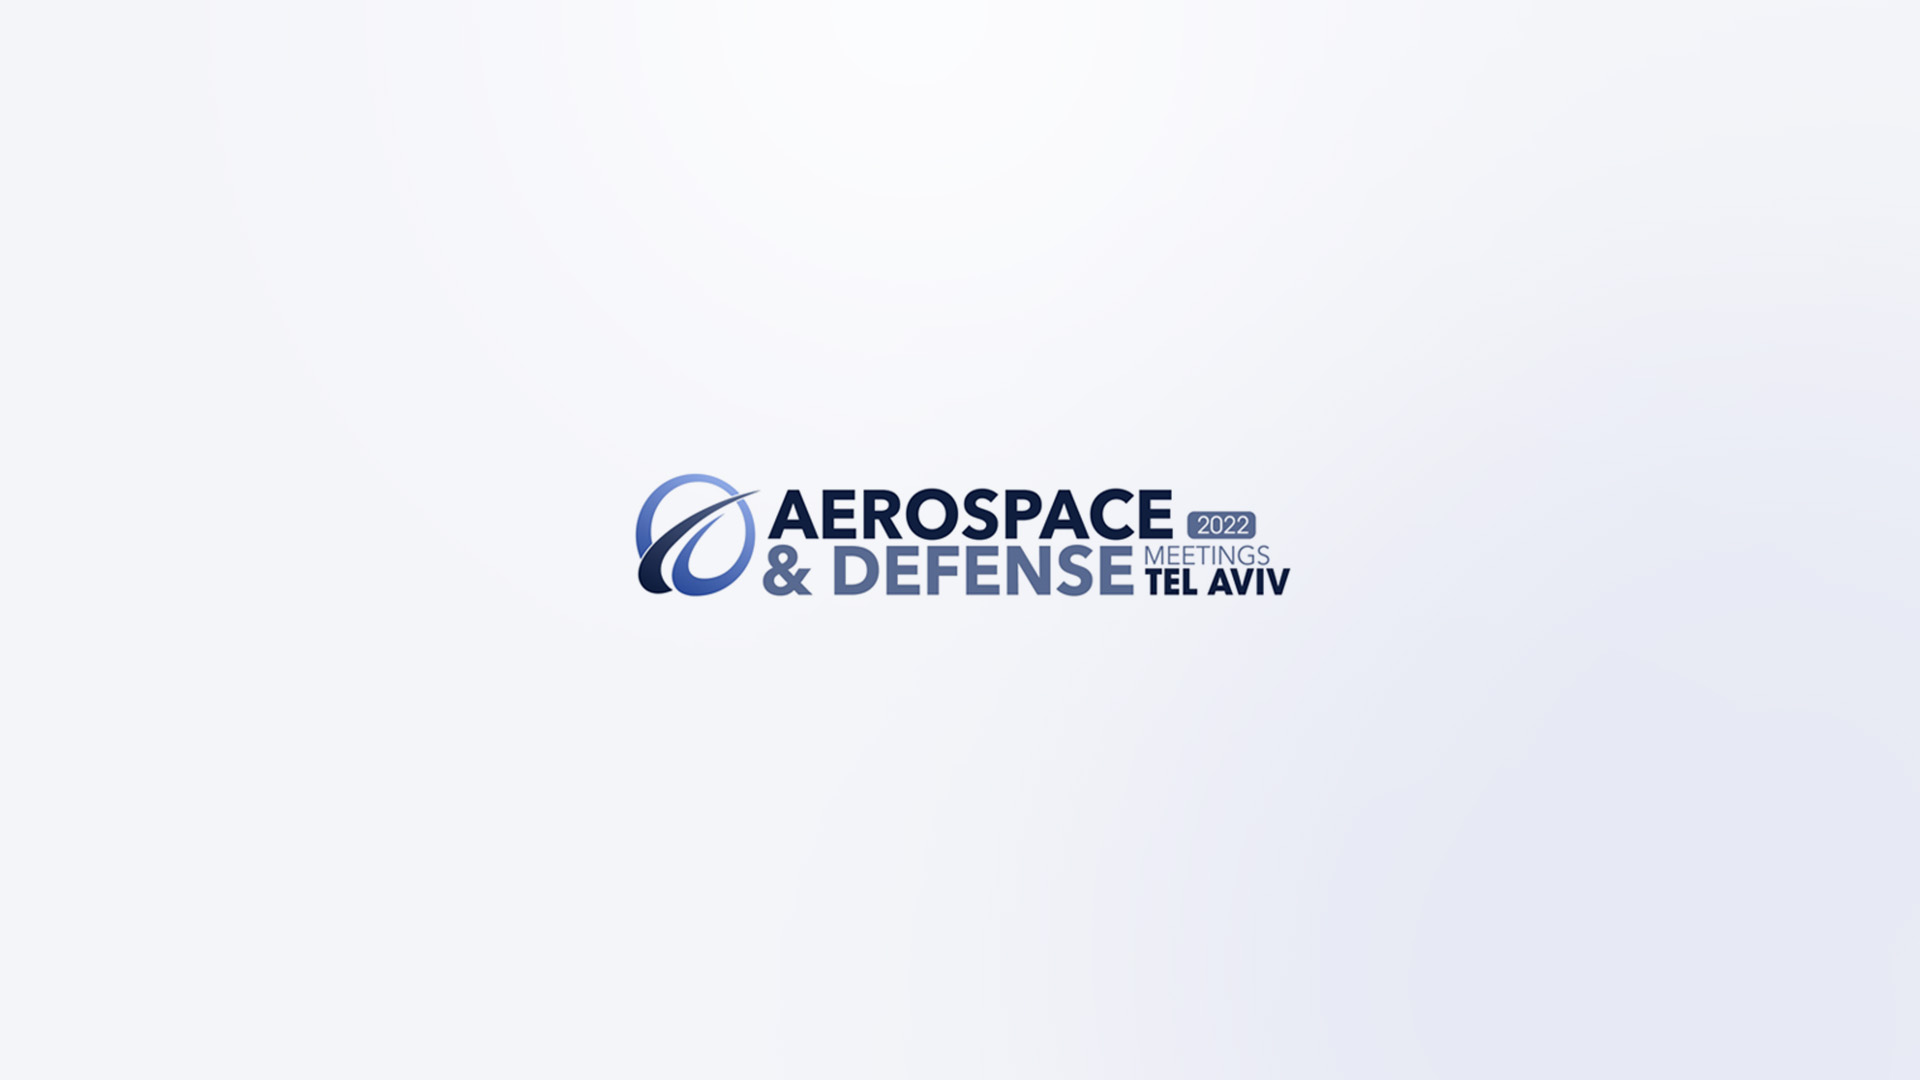 Roboze at the Aerospace & Defense Meetings 2022 in Tel Aviv